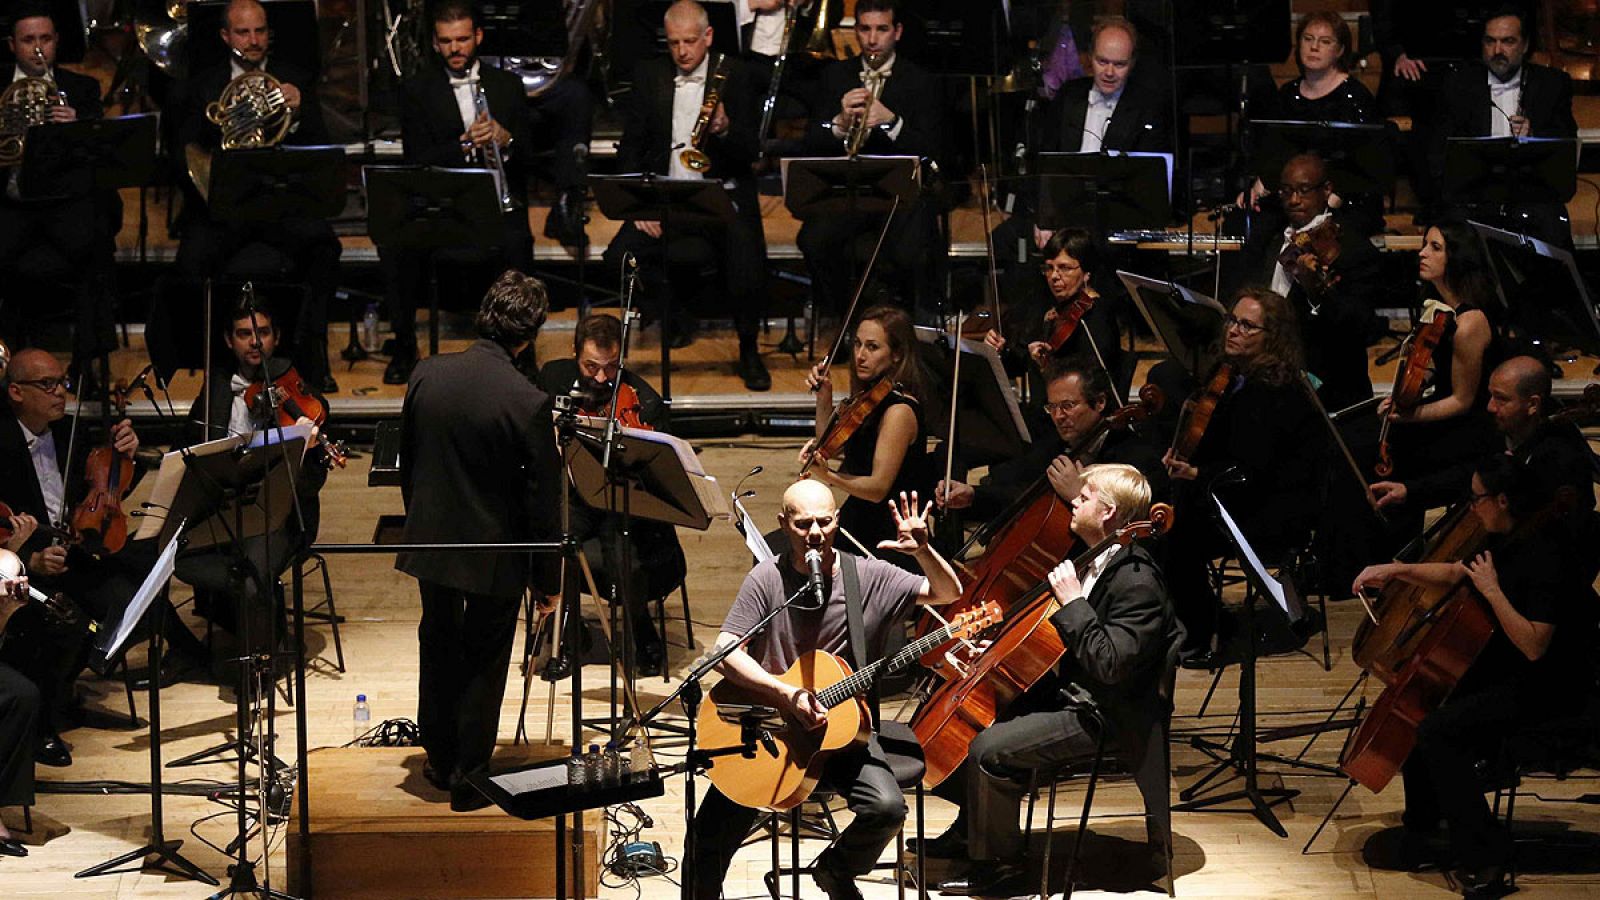 Celtas Cortos junto a la Orquesta Sinfónica del Principado de Asturias durante el concierto en Oviedo